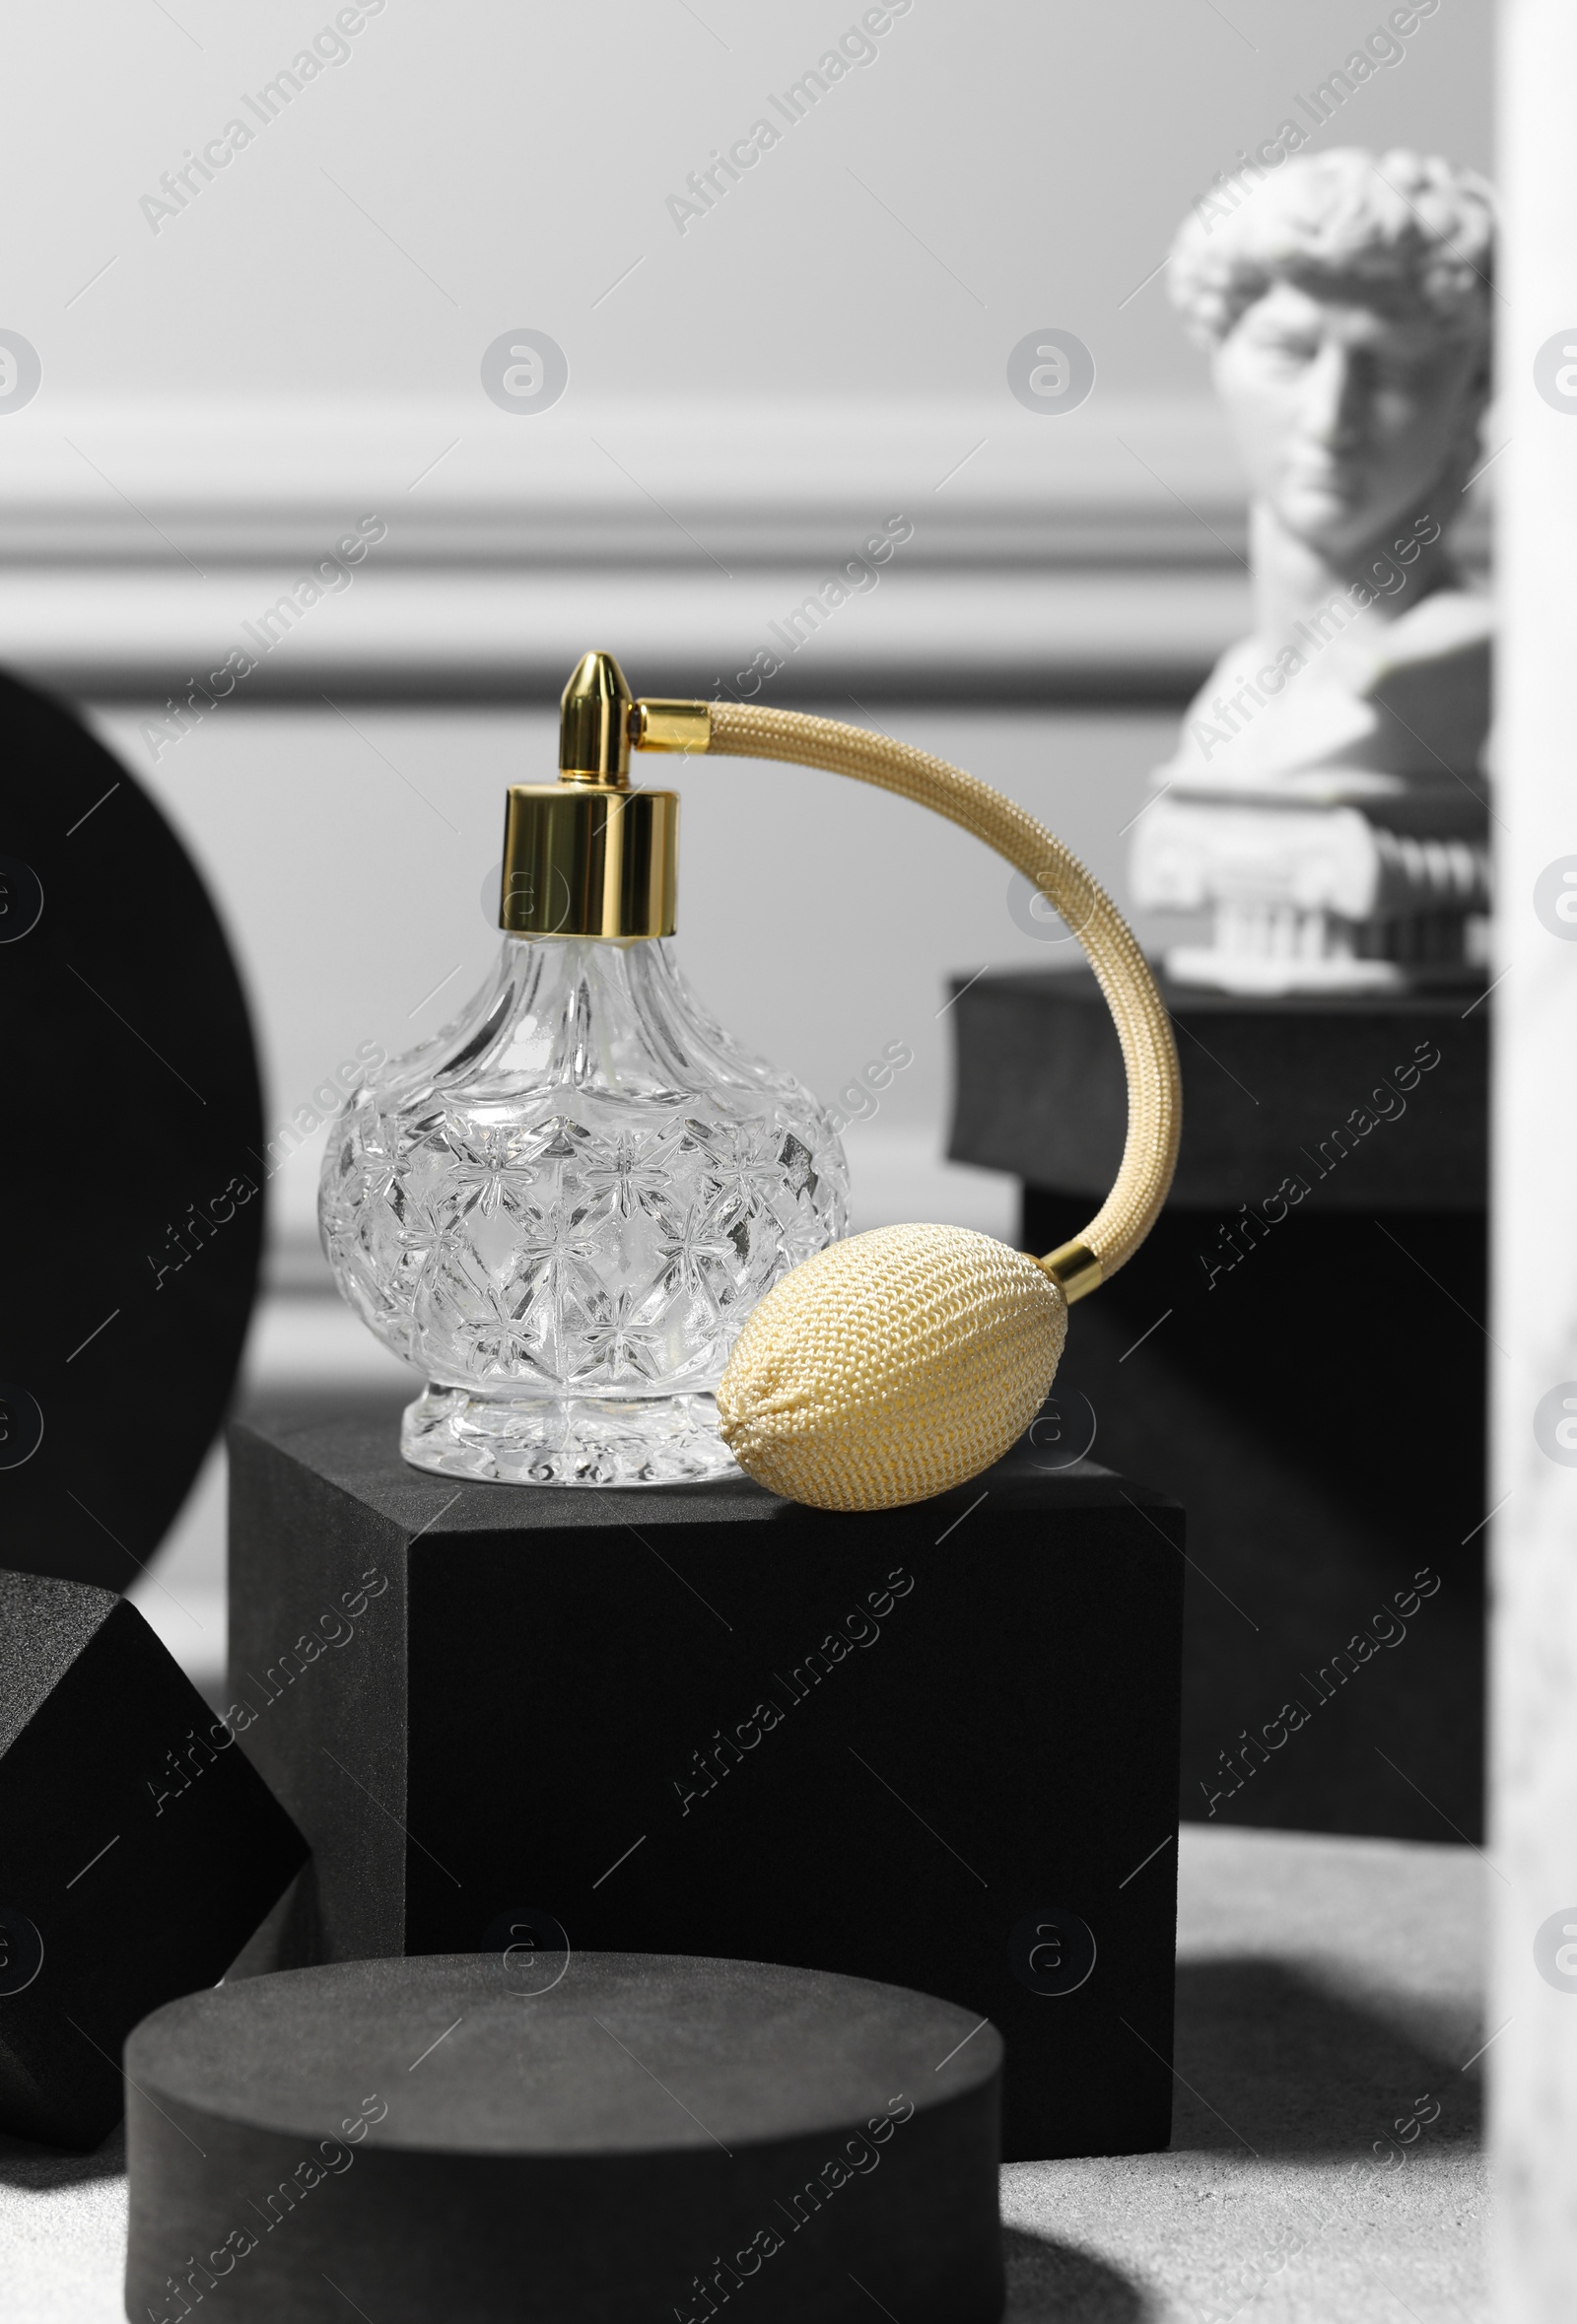 Photo of Stylish presentation of perfume bottle on light grey table